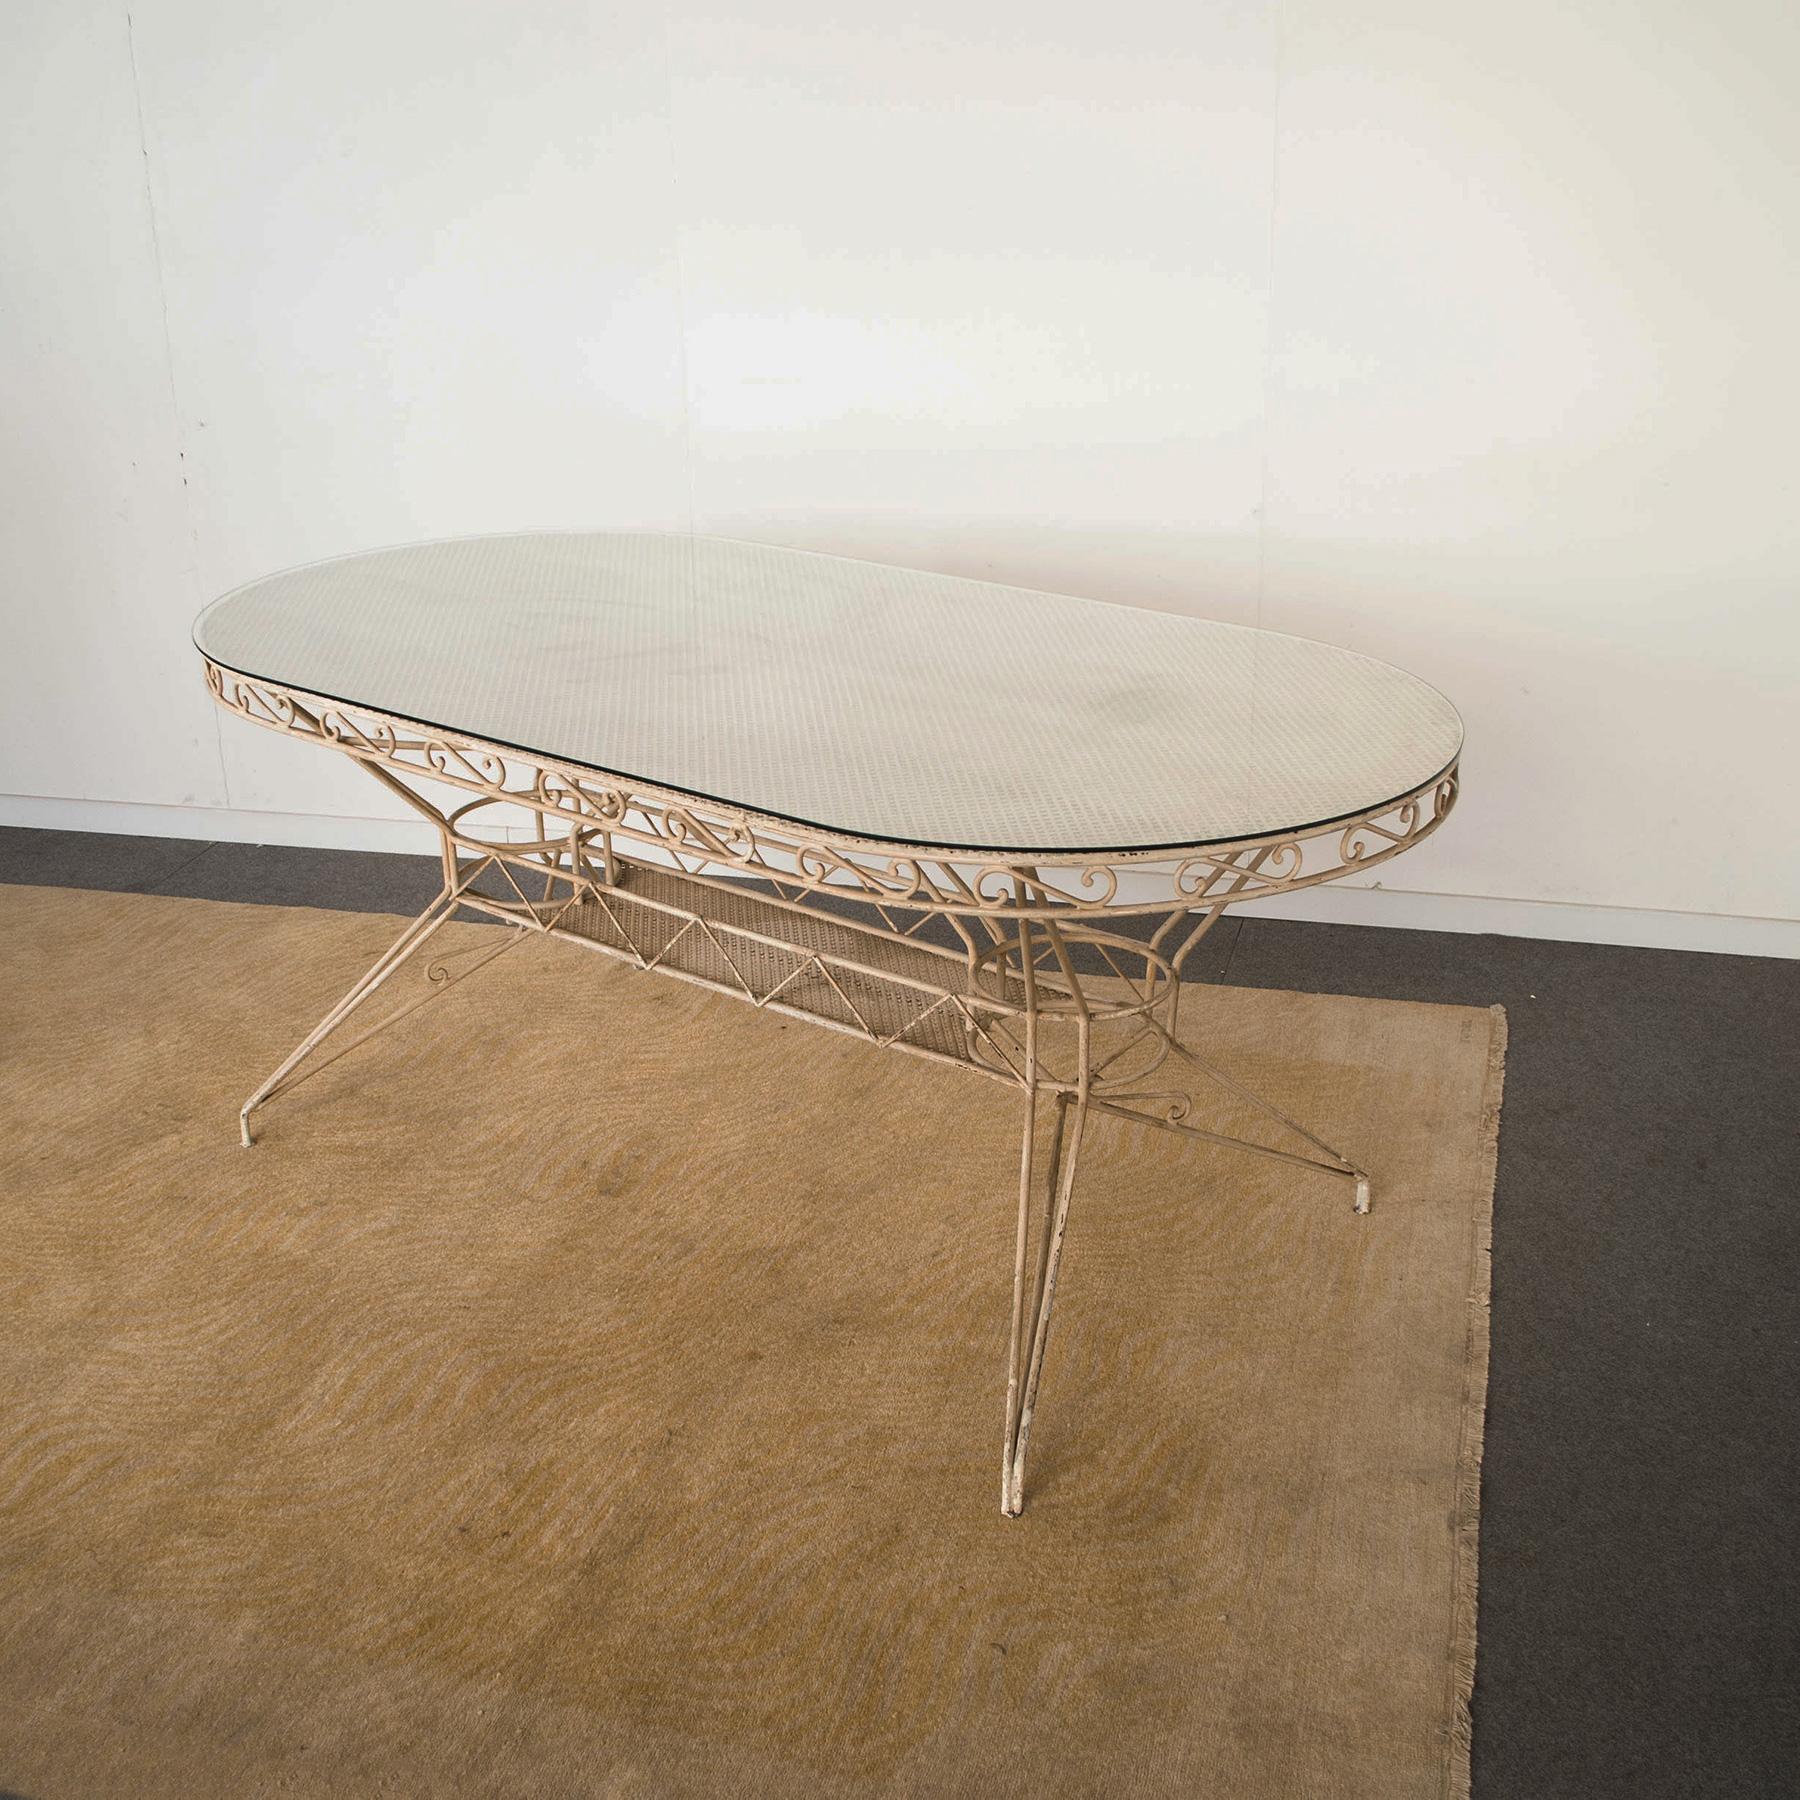 Glass Wrought Iron Table from the 1950s Casa E Giardino Gio Ponti Style